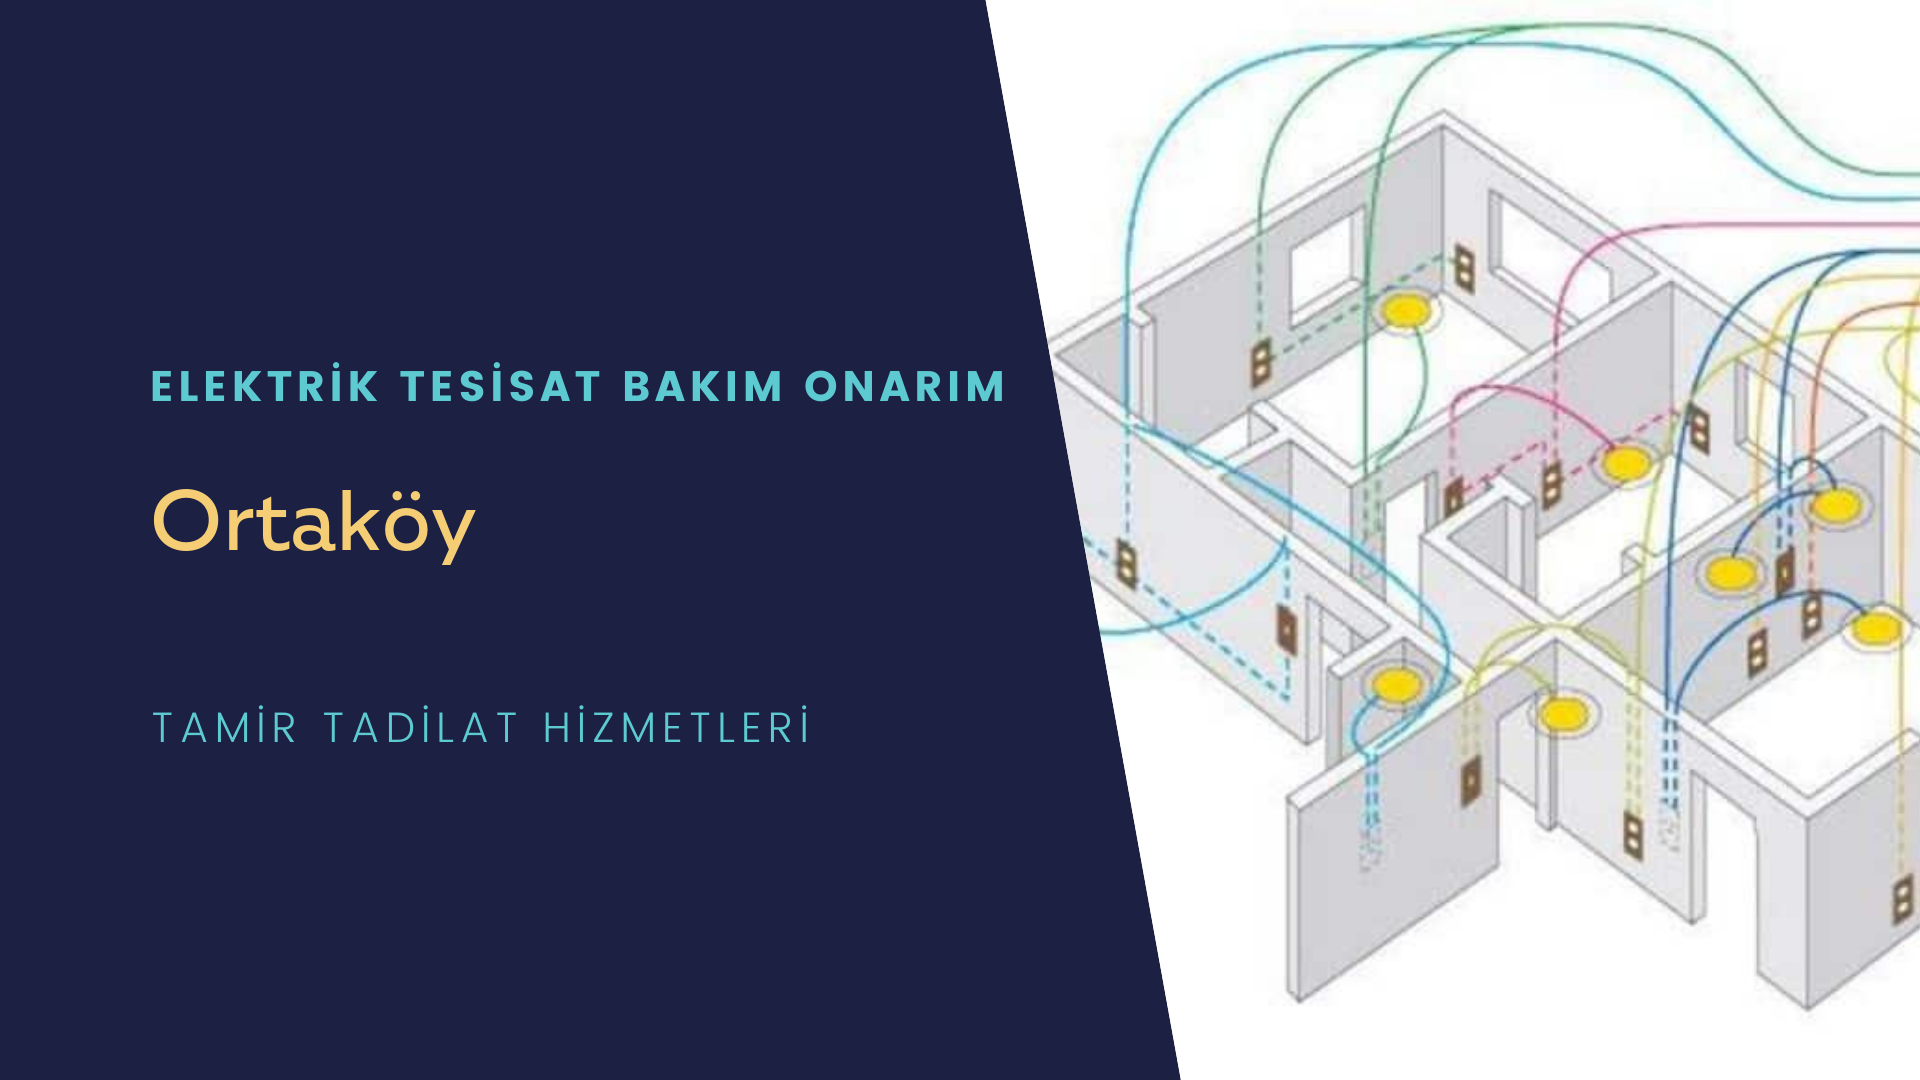 Ortaköy'de elektrik tesisatı ustalarımı arıyorsunuz doğru adrestenizi Ortaköy elektrik tesisatı ustalarımız 7/24 sizlere hizmet vermekten mutluluk duyar.